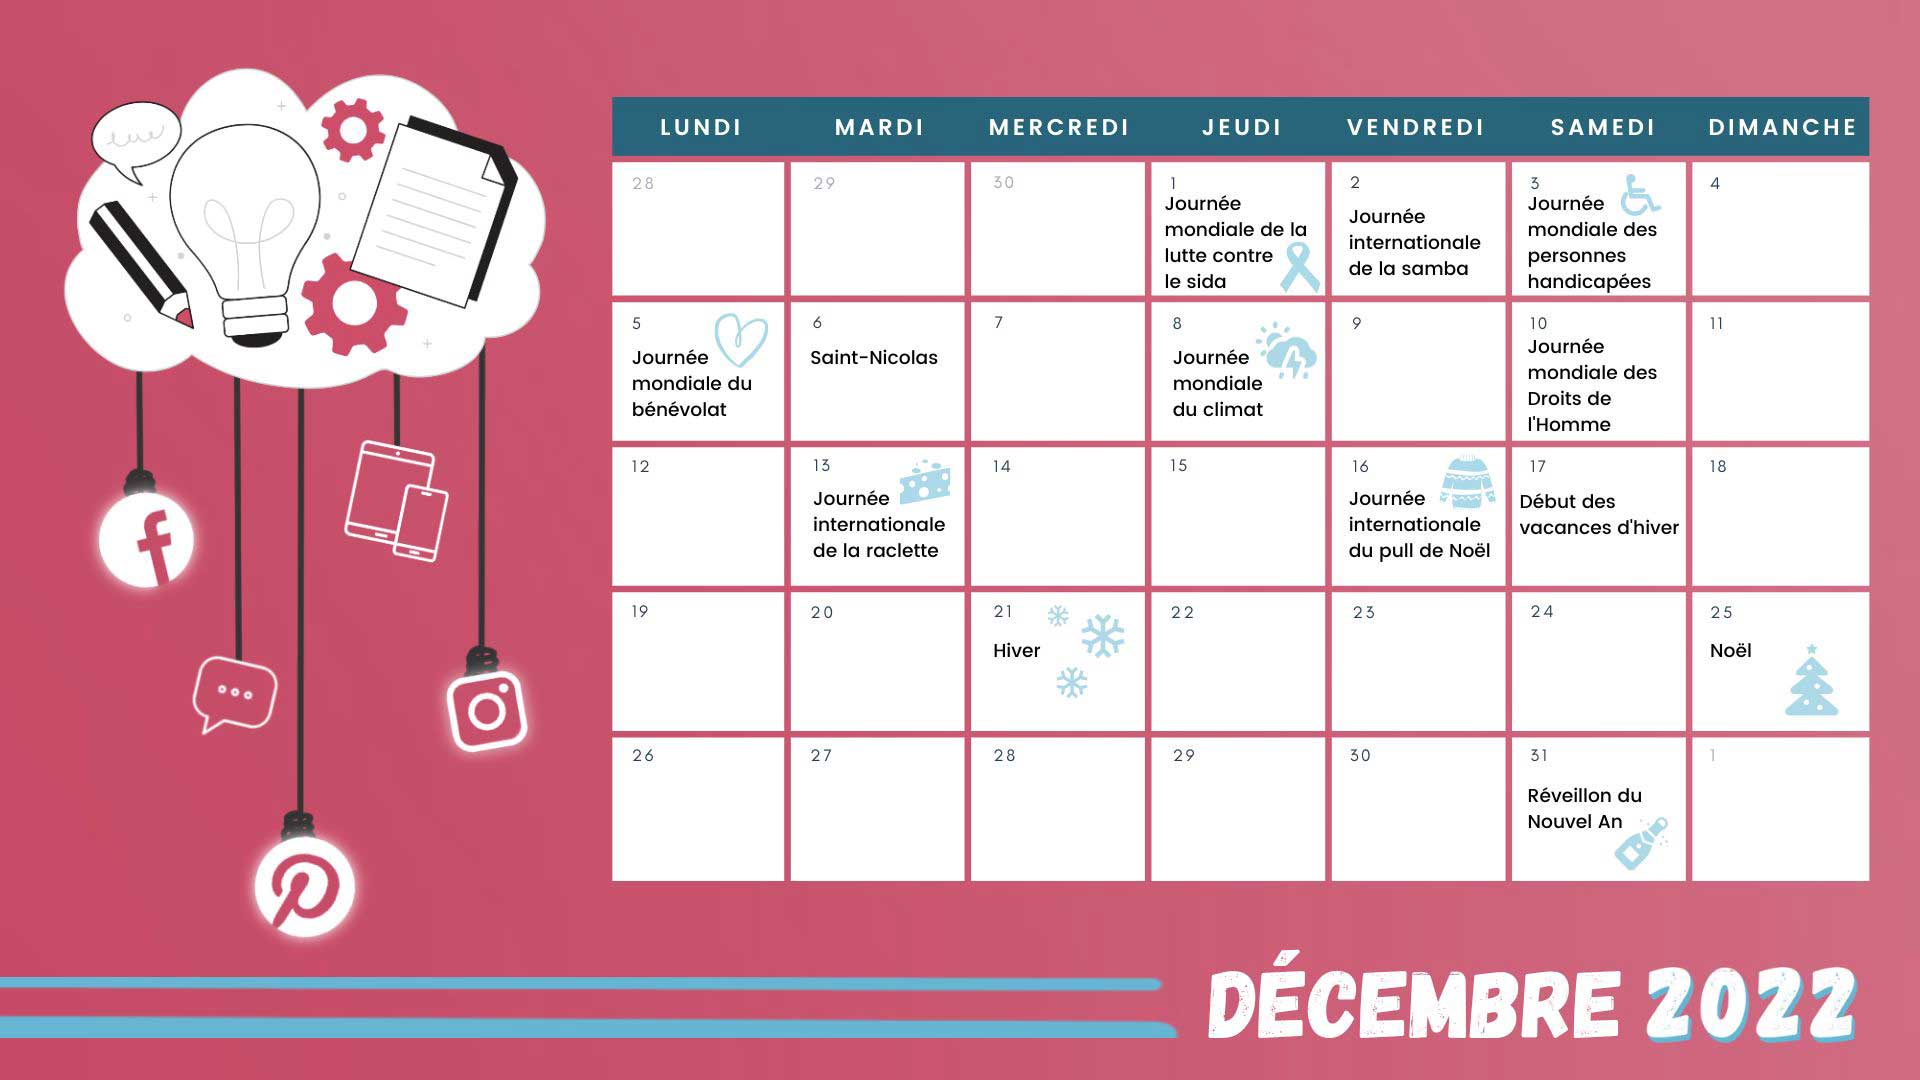 Retrouvez tous les événements clés du mois de décembre grâce à votre calendrier marronnier décembre 2022 !